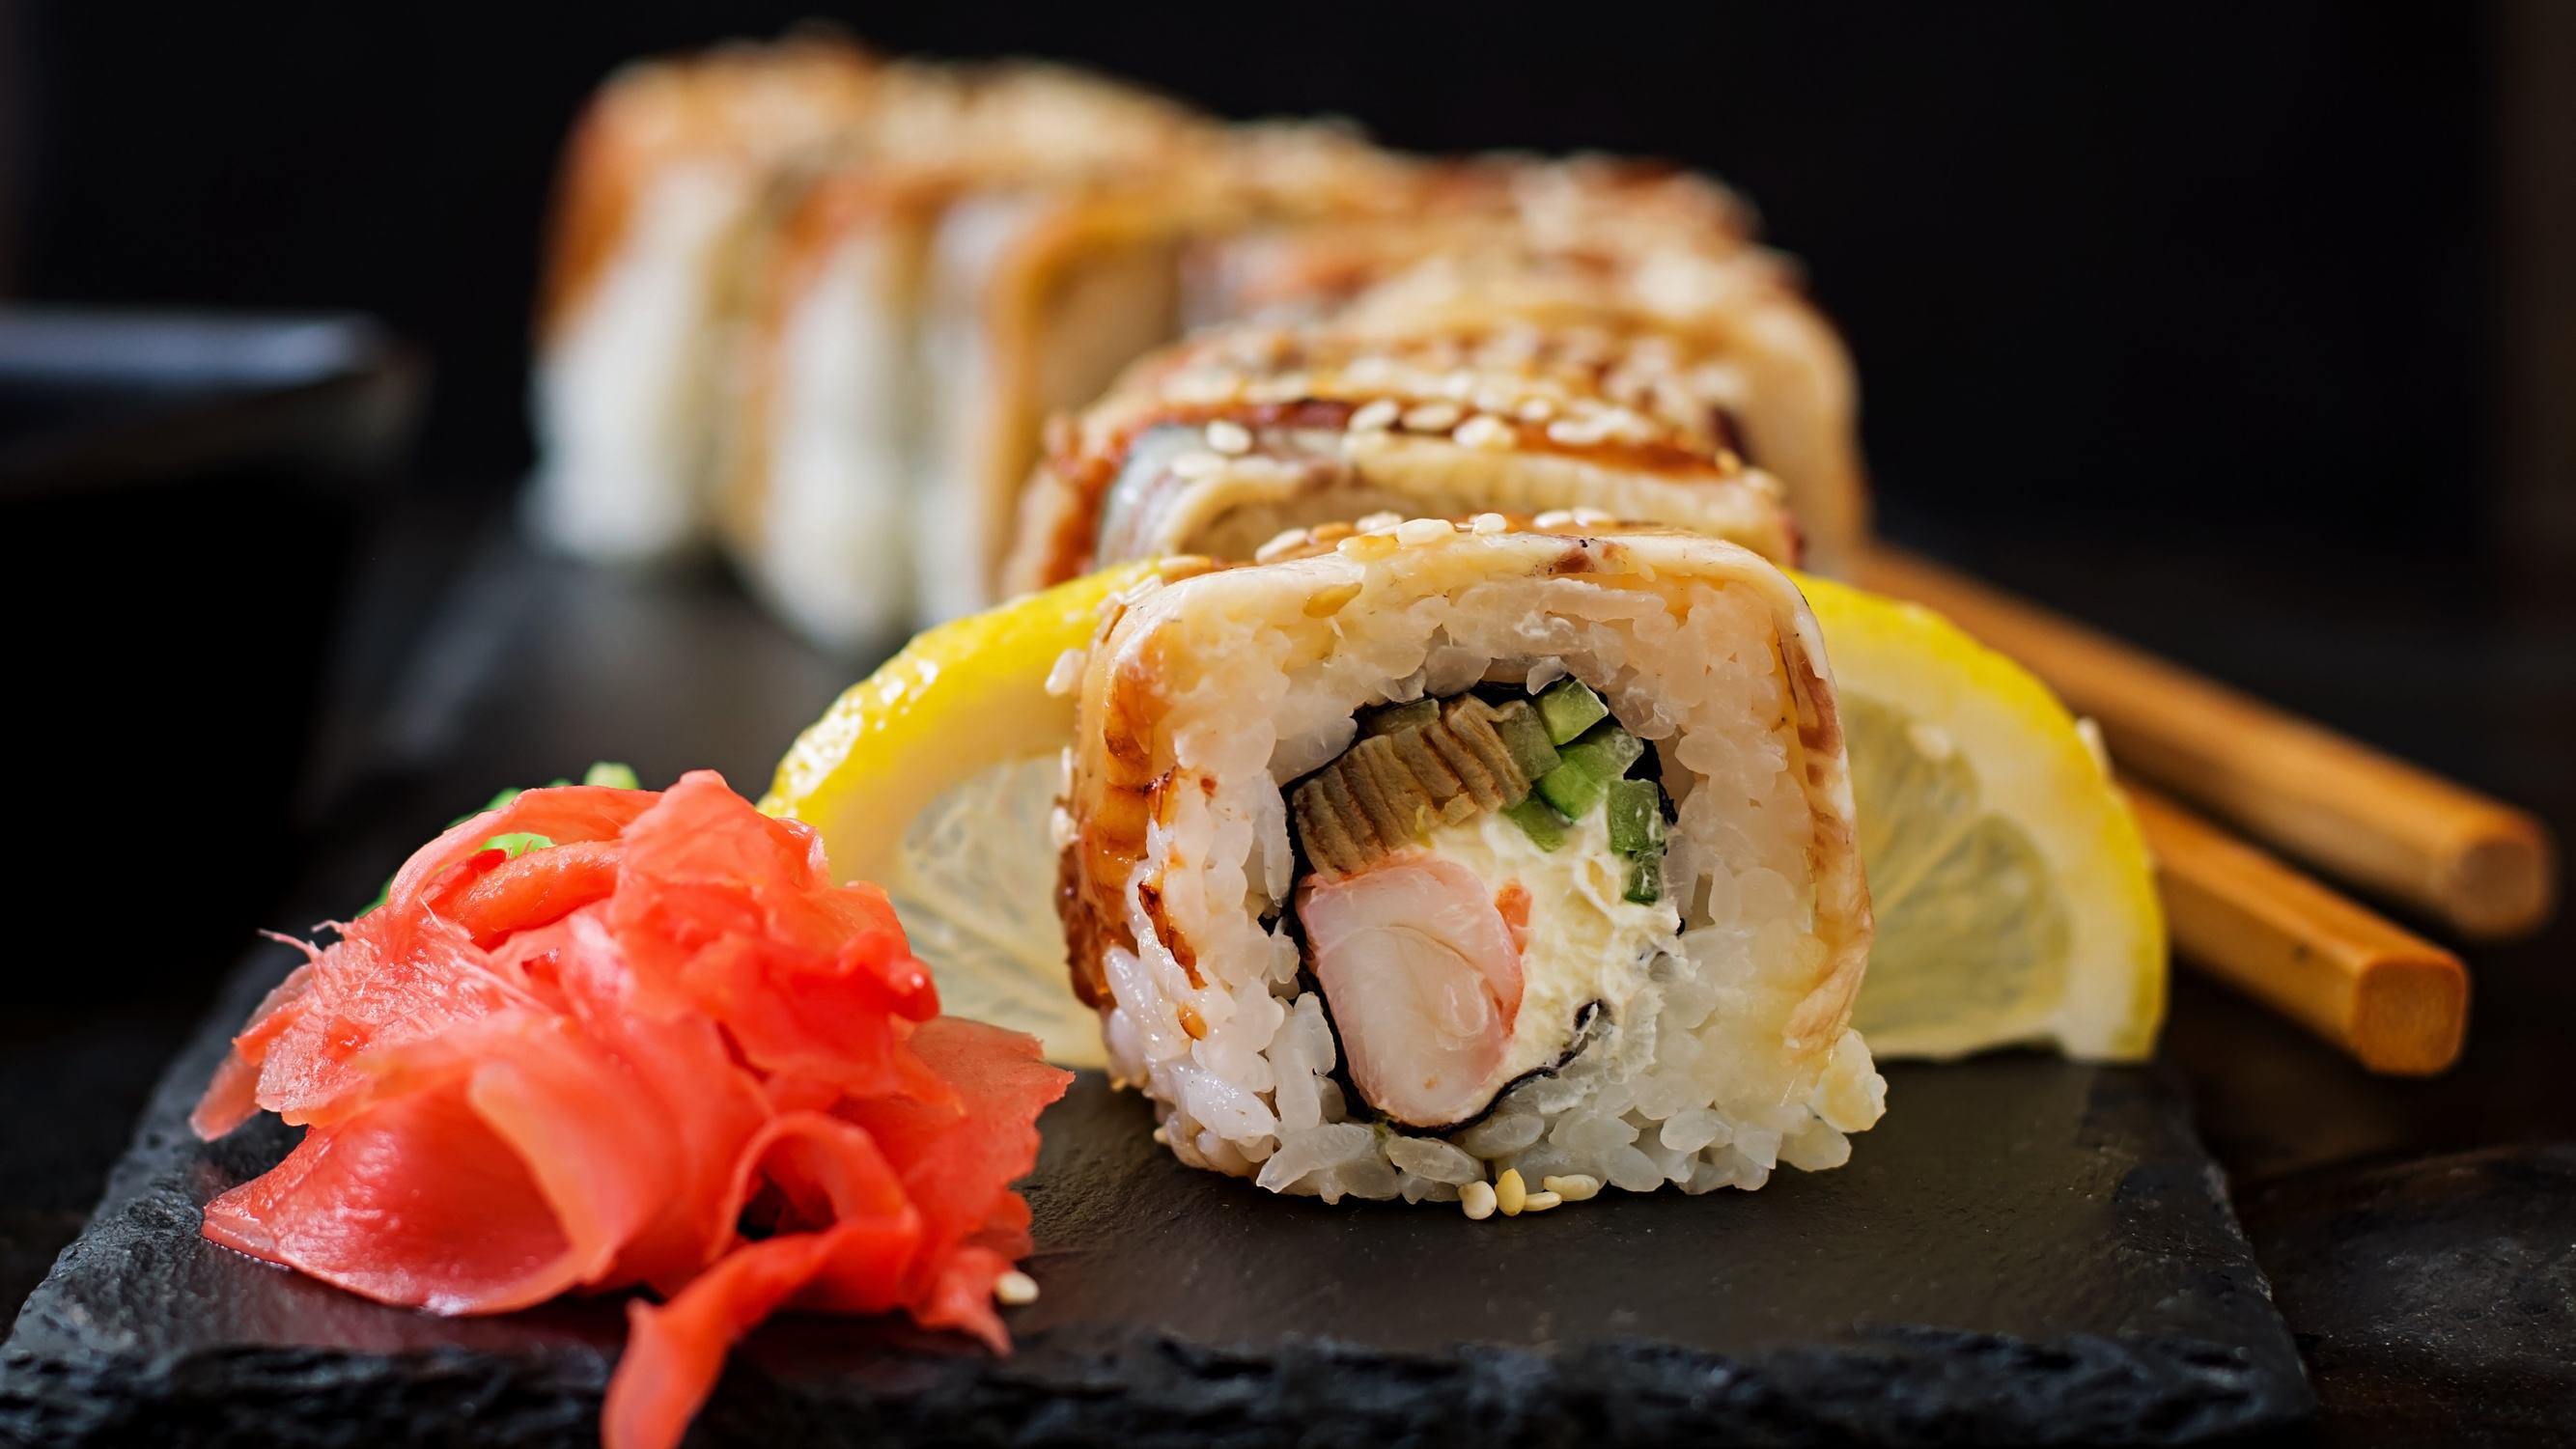 芳香四溢美味诱人的日本寿司高清图片2